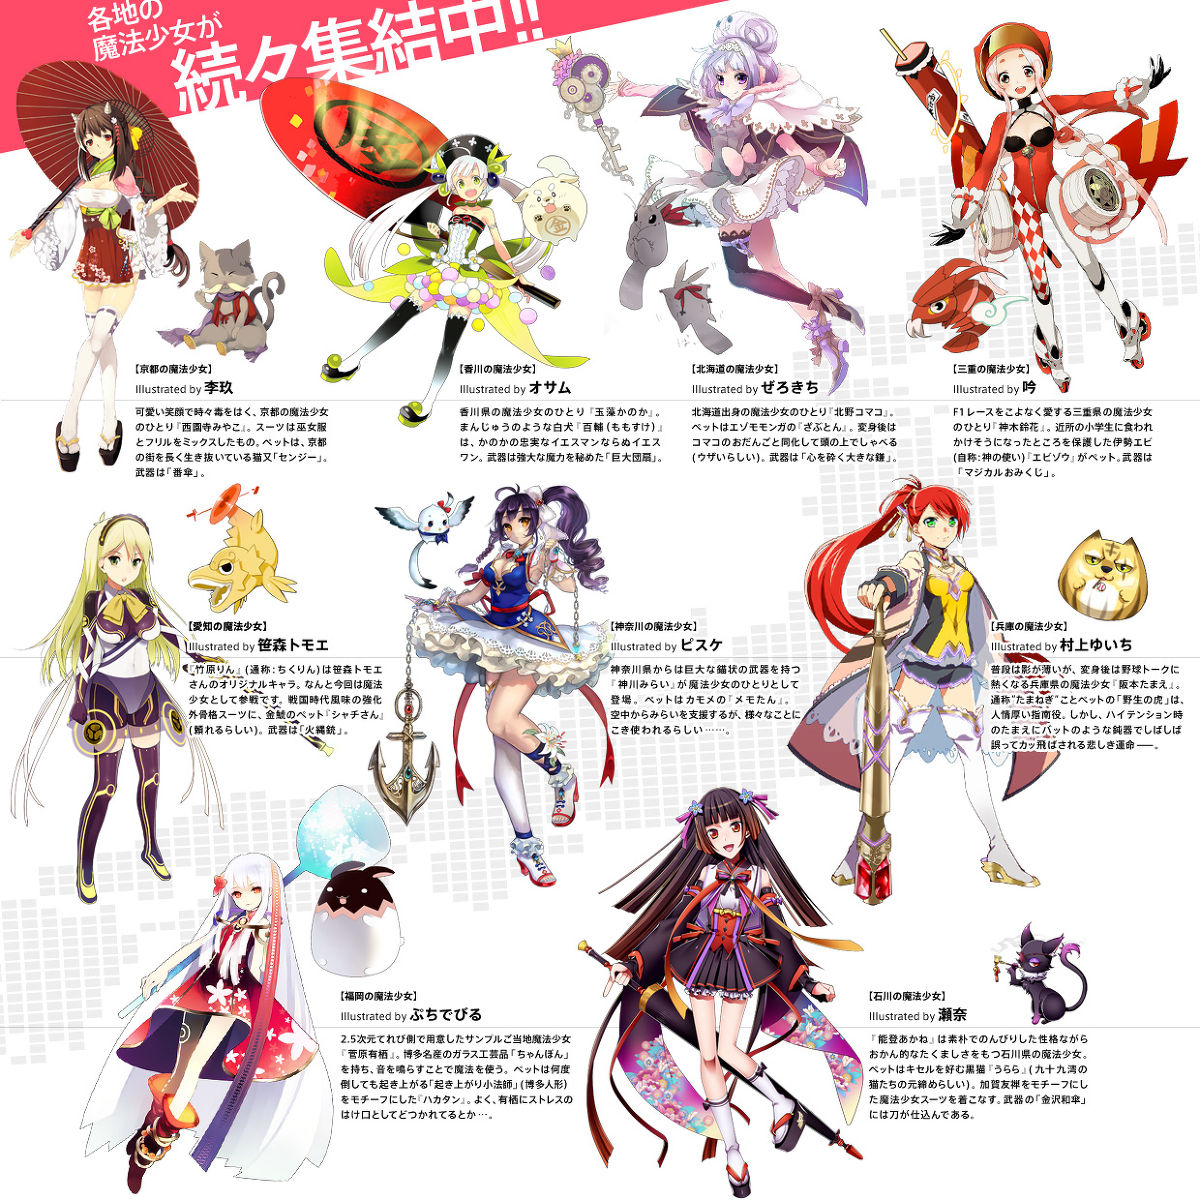 47人少女战队 魔法少女大战 动画化 定档来年4月番 日本电玩娱乐资讯